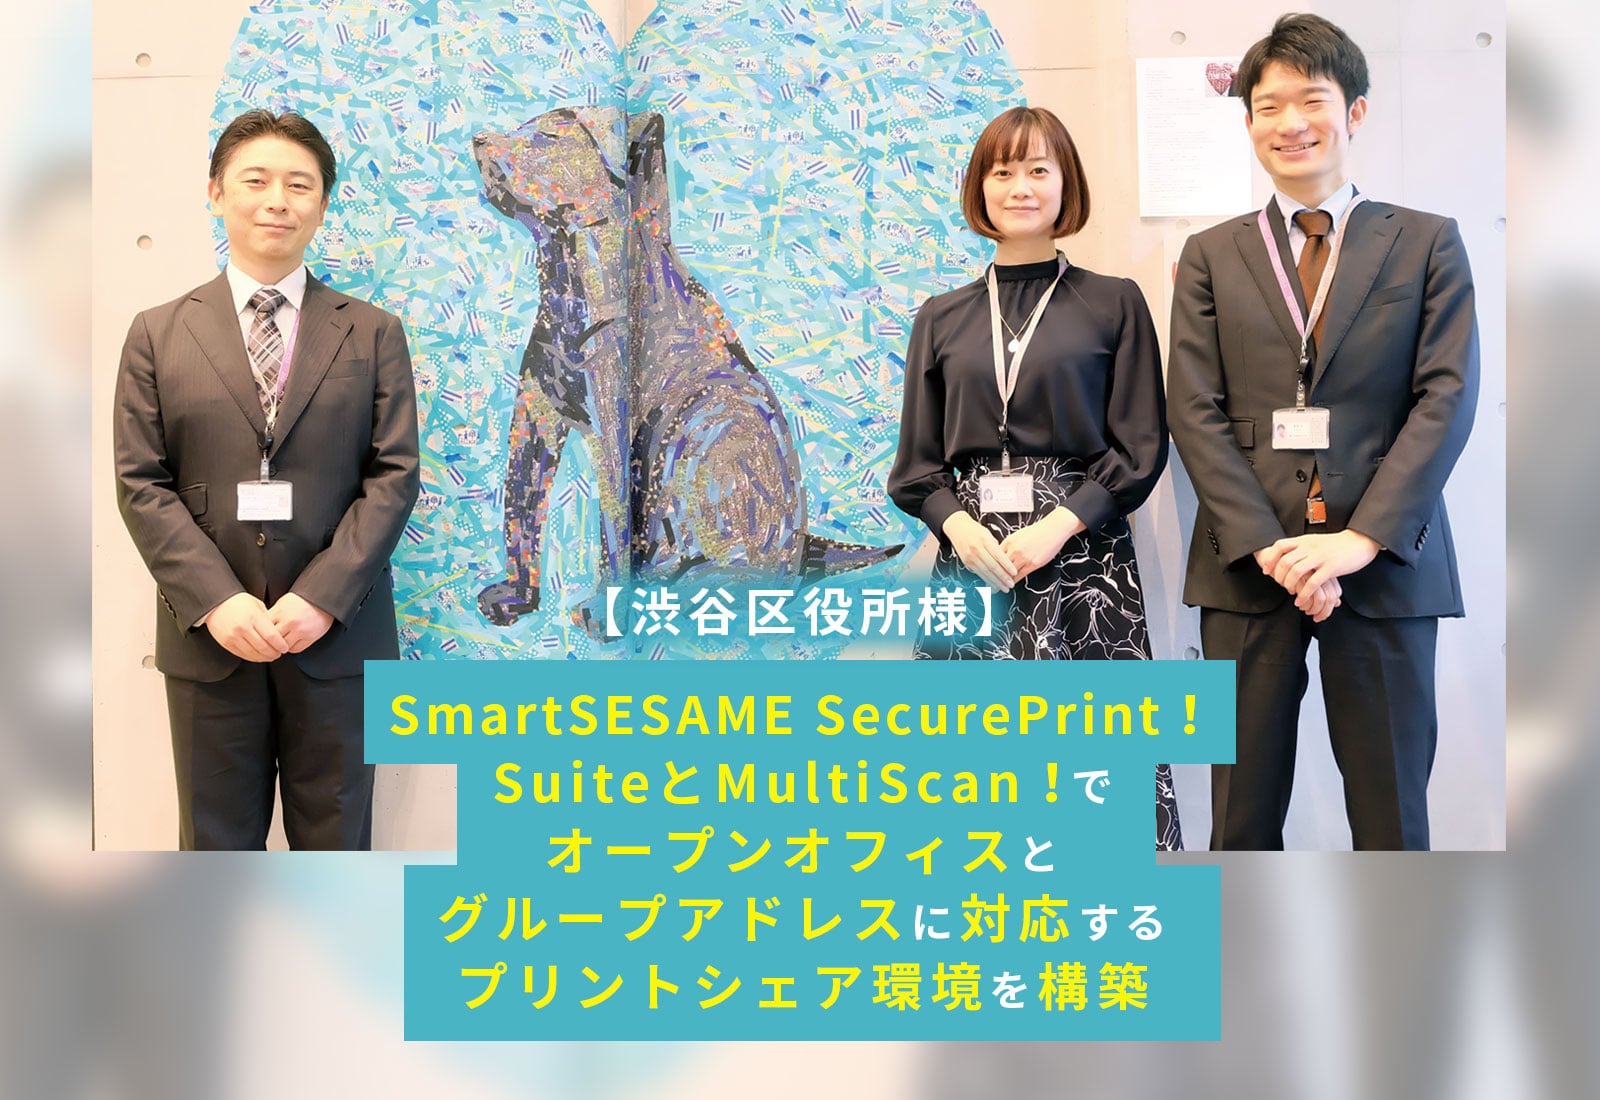 【渋谷区役所】SmartSESAME SecurePrint！SuiteとMultiScan！でオープンオフィスとグループアドレスに対応するプリントシェア環境を構築